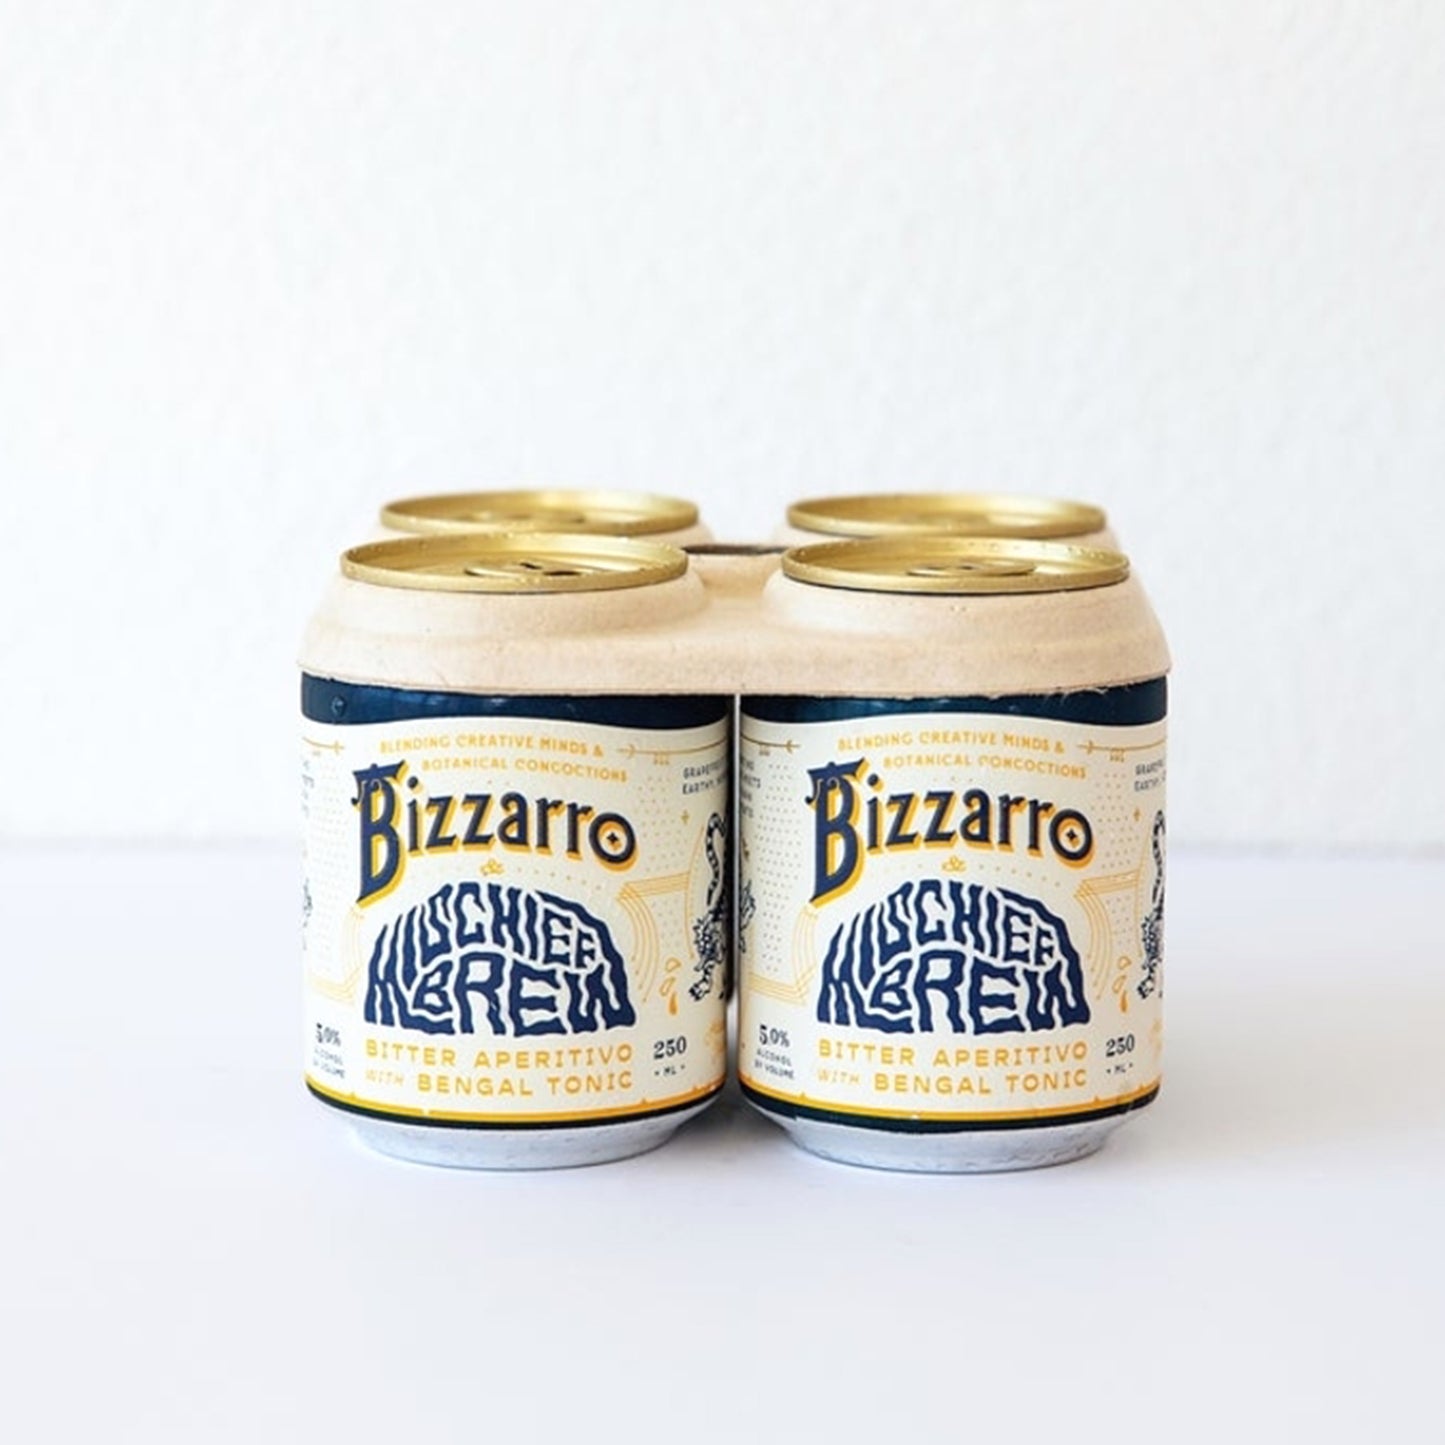 Delinquente Bizzarro & Mischief Brew Tonic Can (250 ml) - Half Case (24 cans)